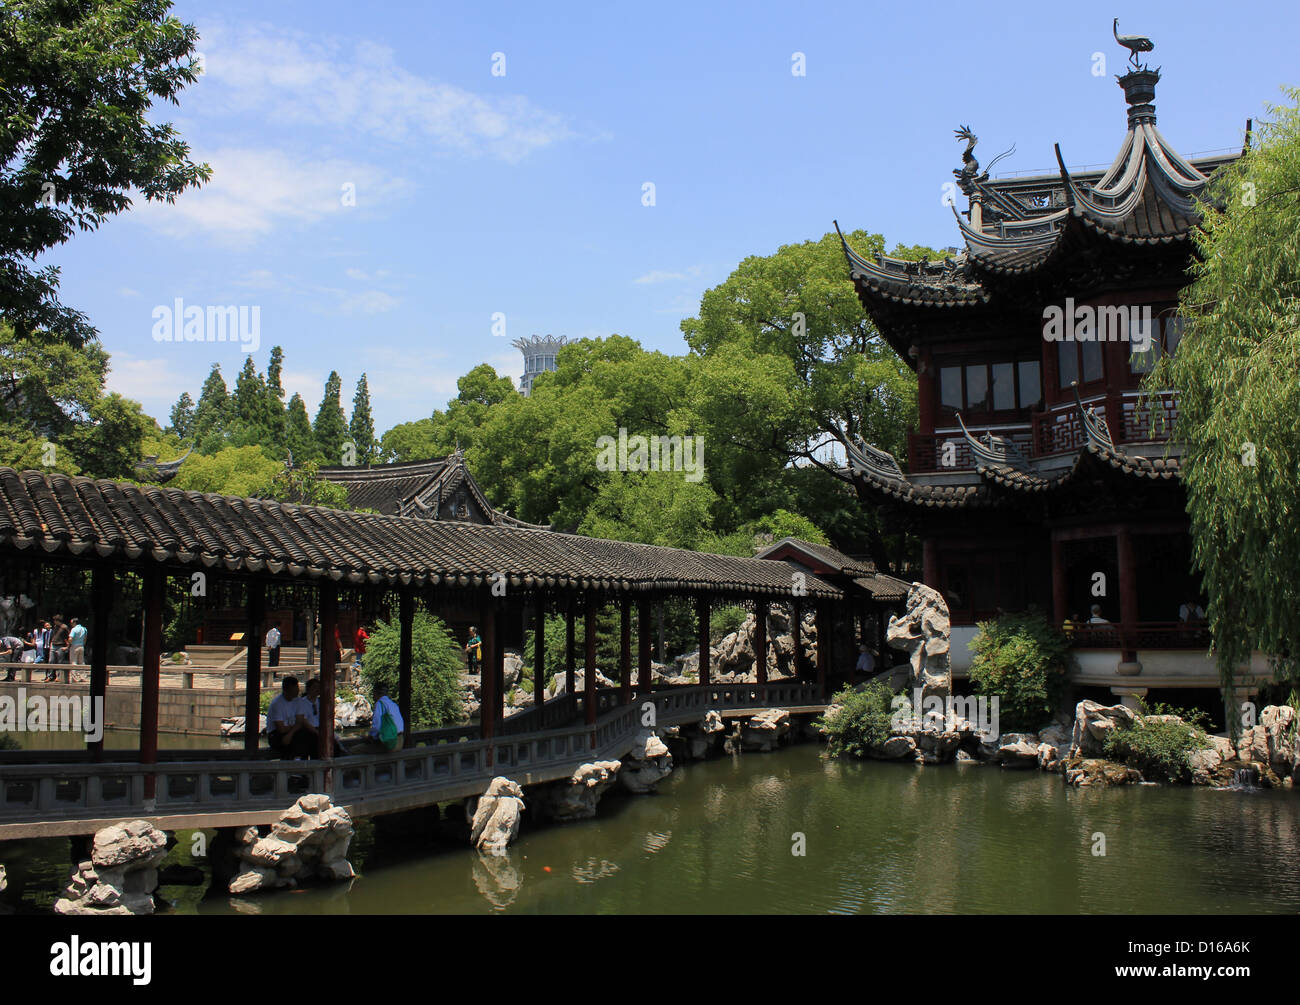 Le pont et le chinois à la maison Jardin Yuyuan de Shanghai, Chine Banque D'Images